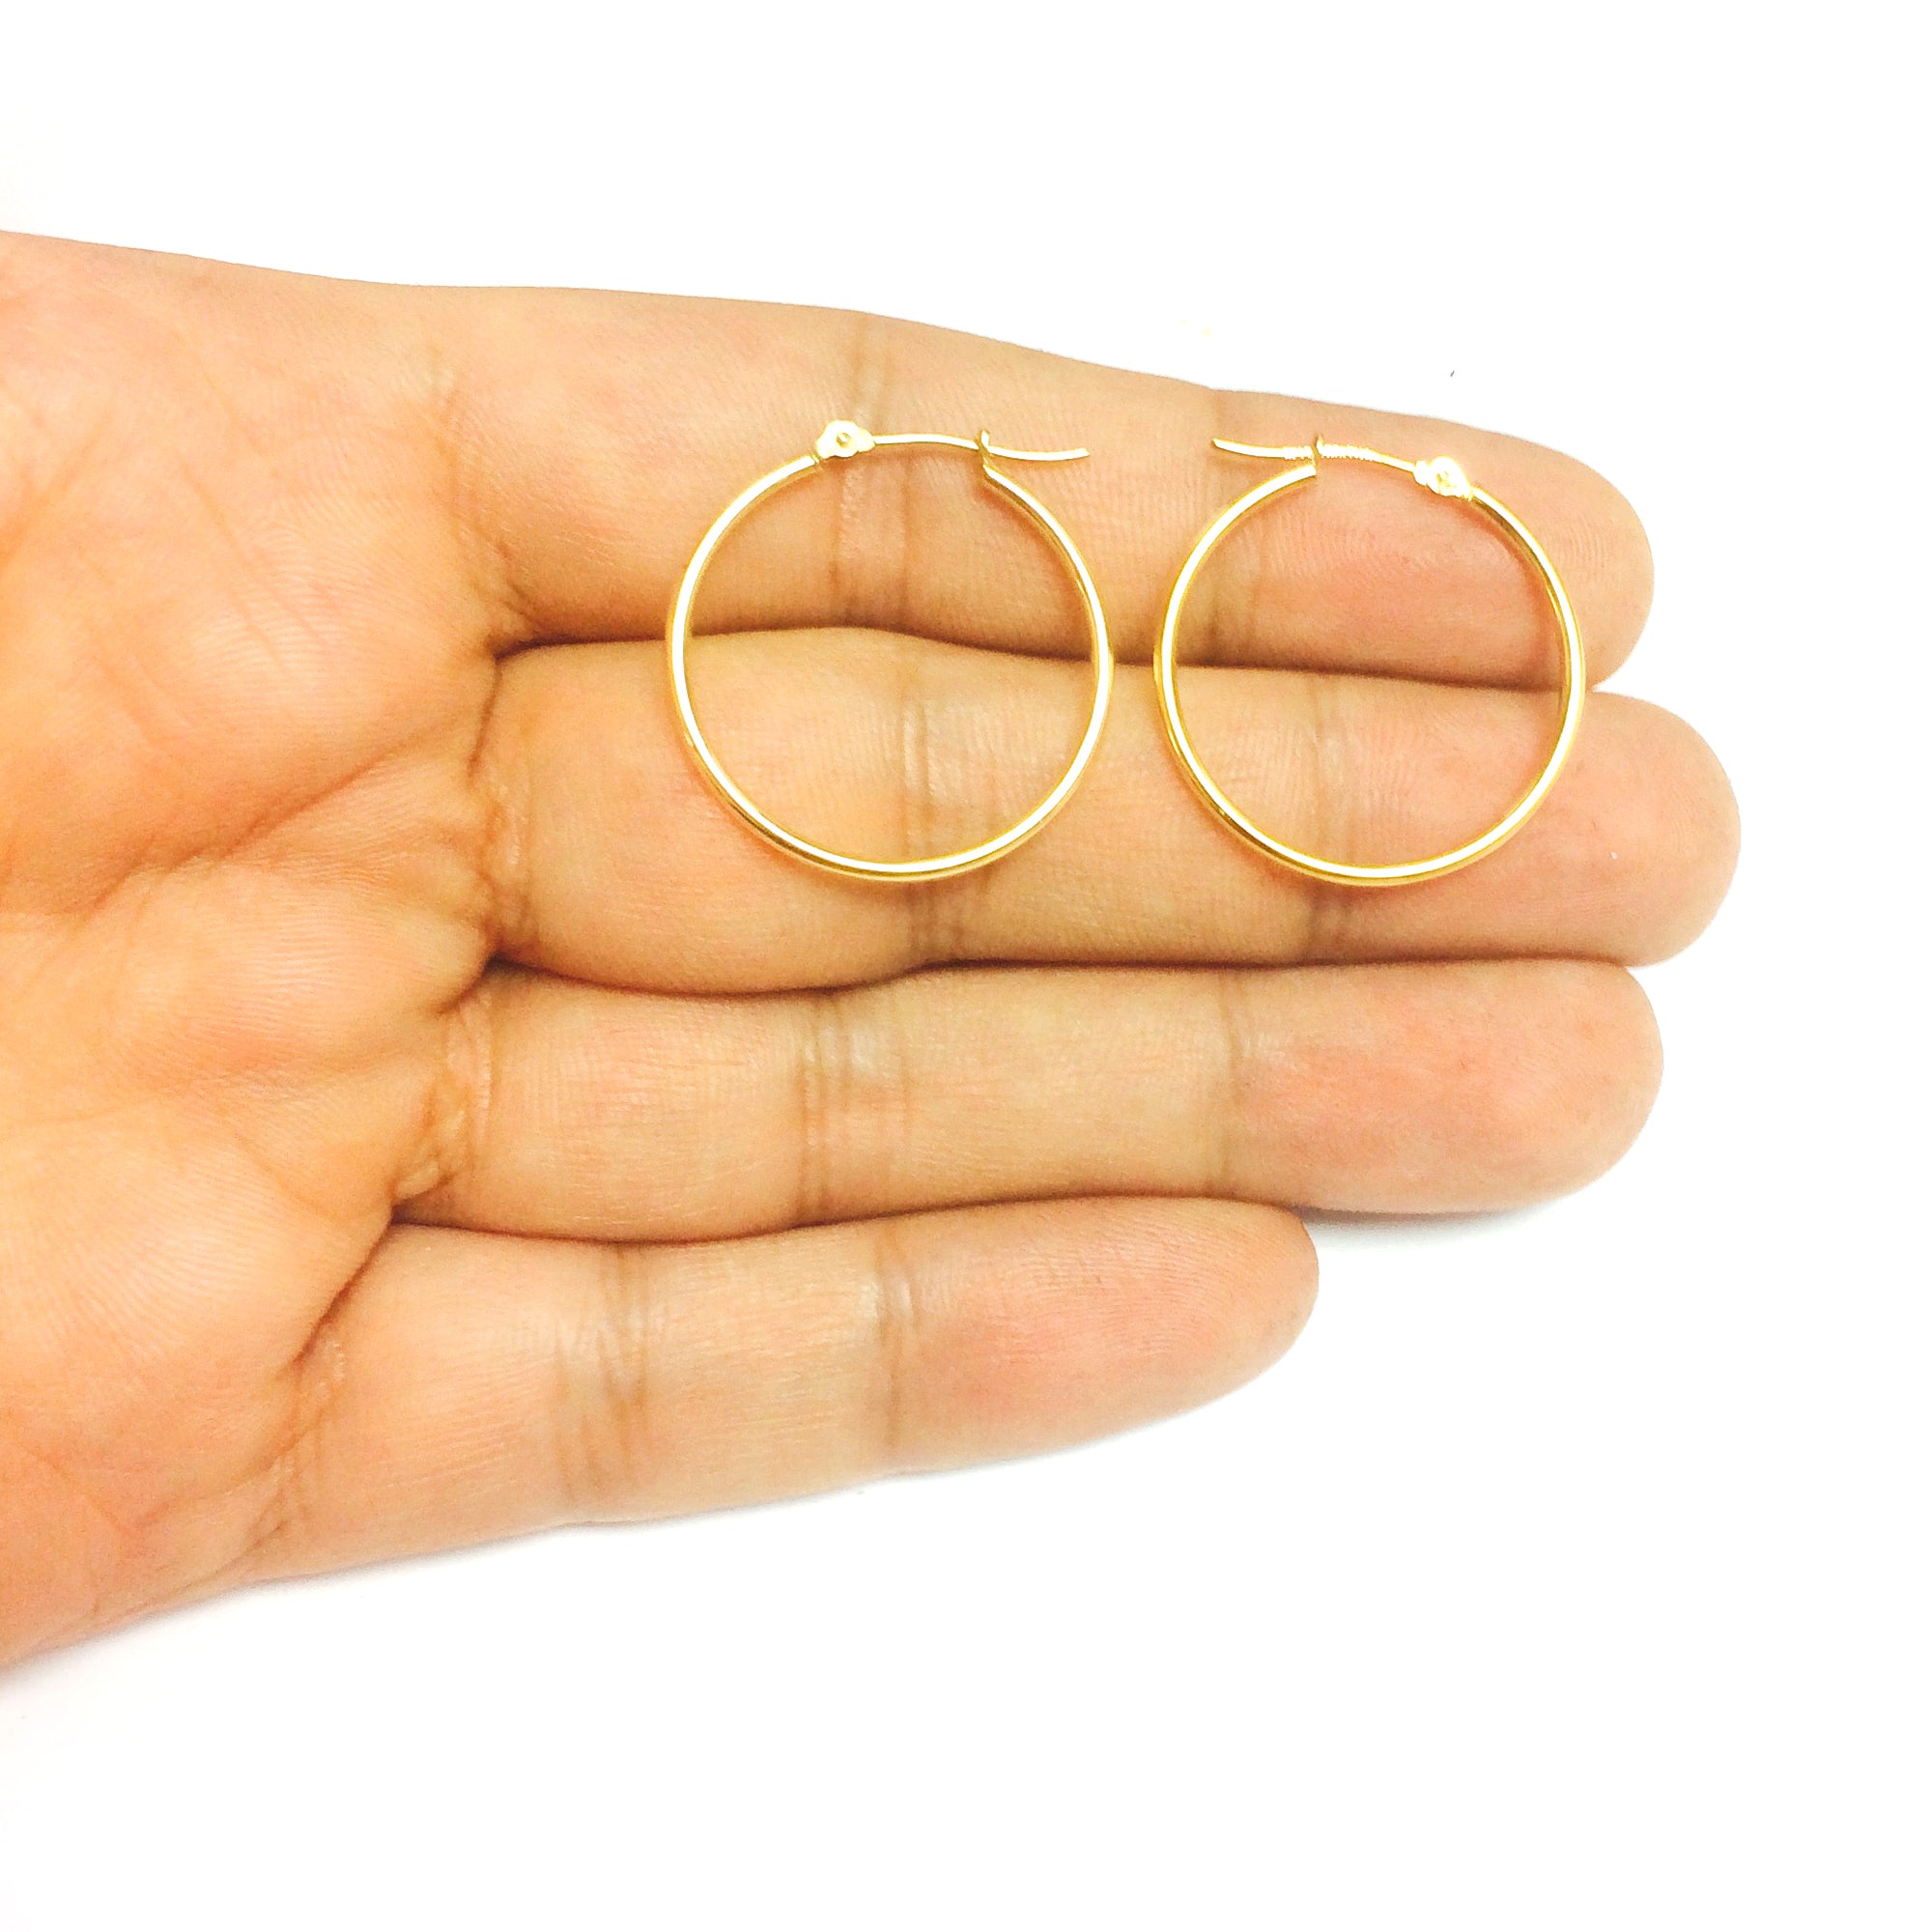 14k gult guld 1,5 mm glänsande runda rörbågeörhängen fina designersmycken för män och kvinnor